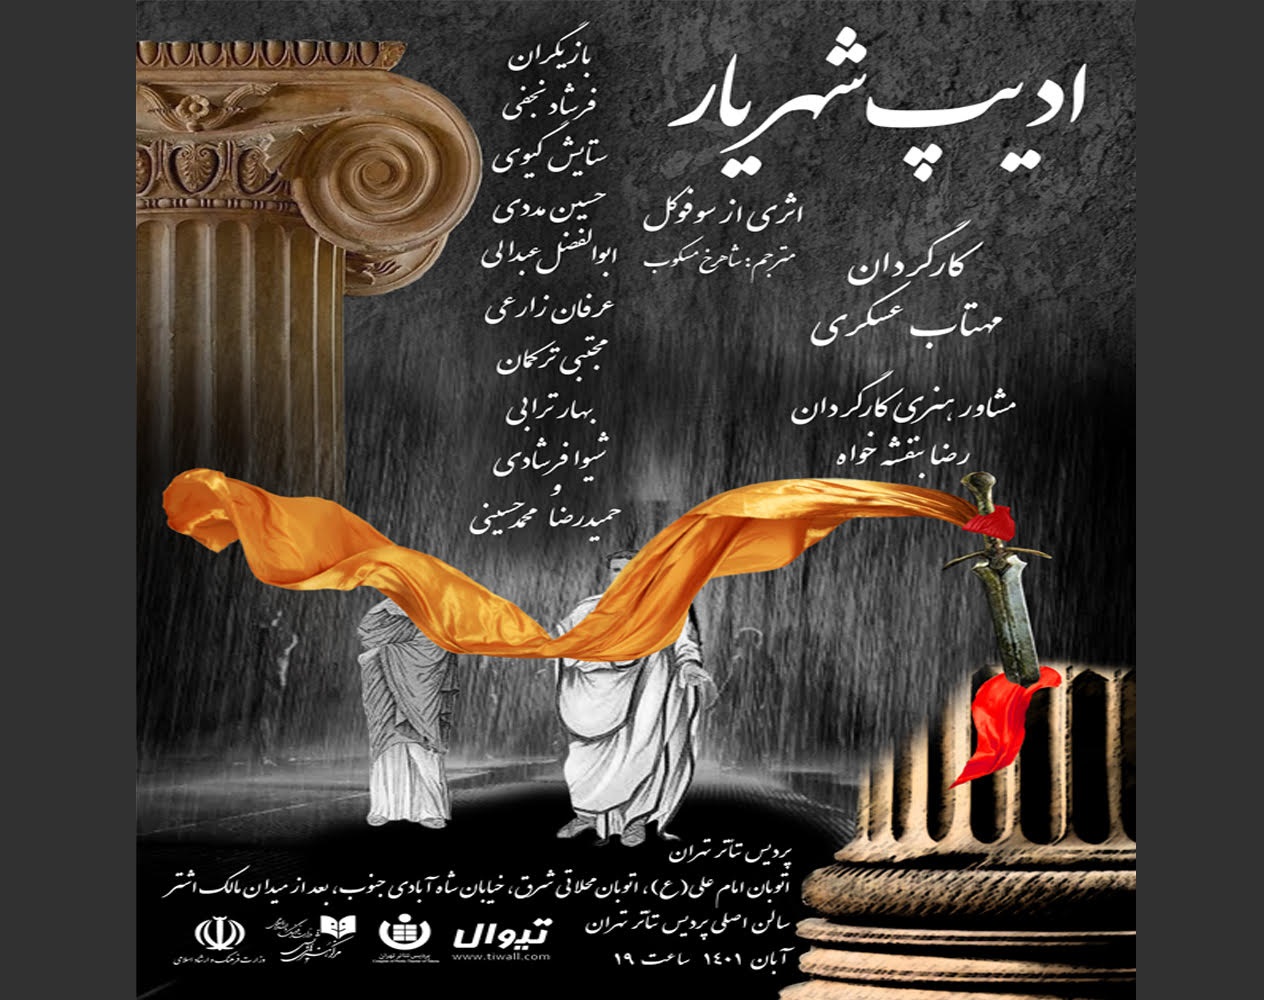 نمایش ادیب شهریار در پردیس تئاتر تهران اجرا می شود